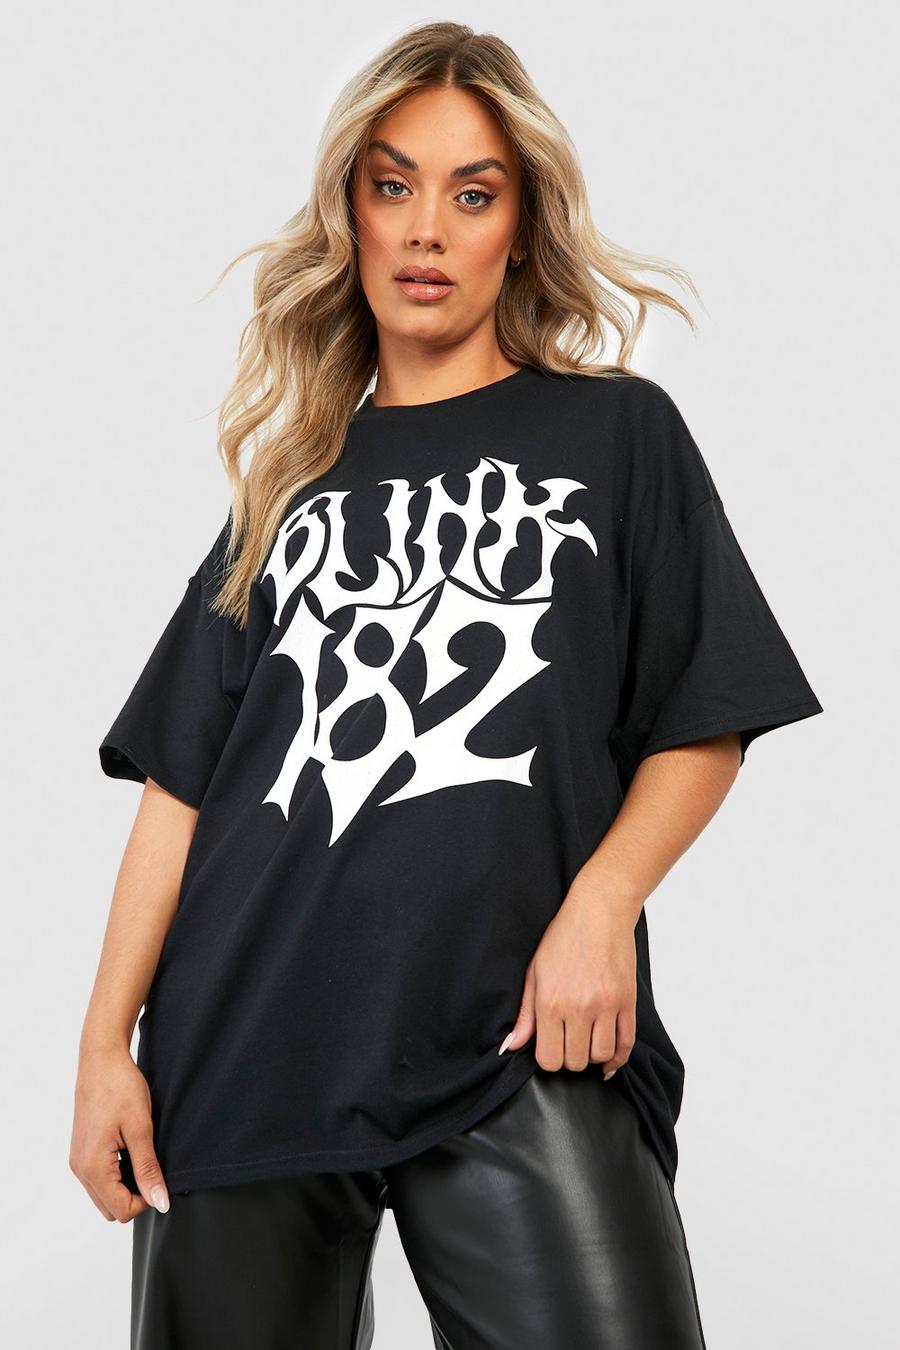 Grande taille - T-shirt oversize à imprimé Blink 182, Black noir